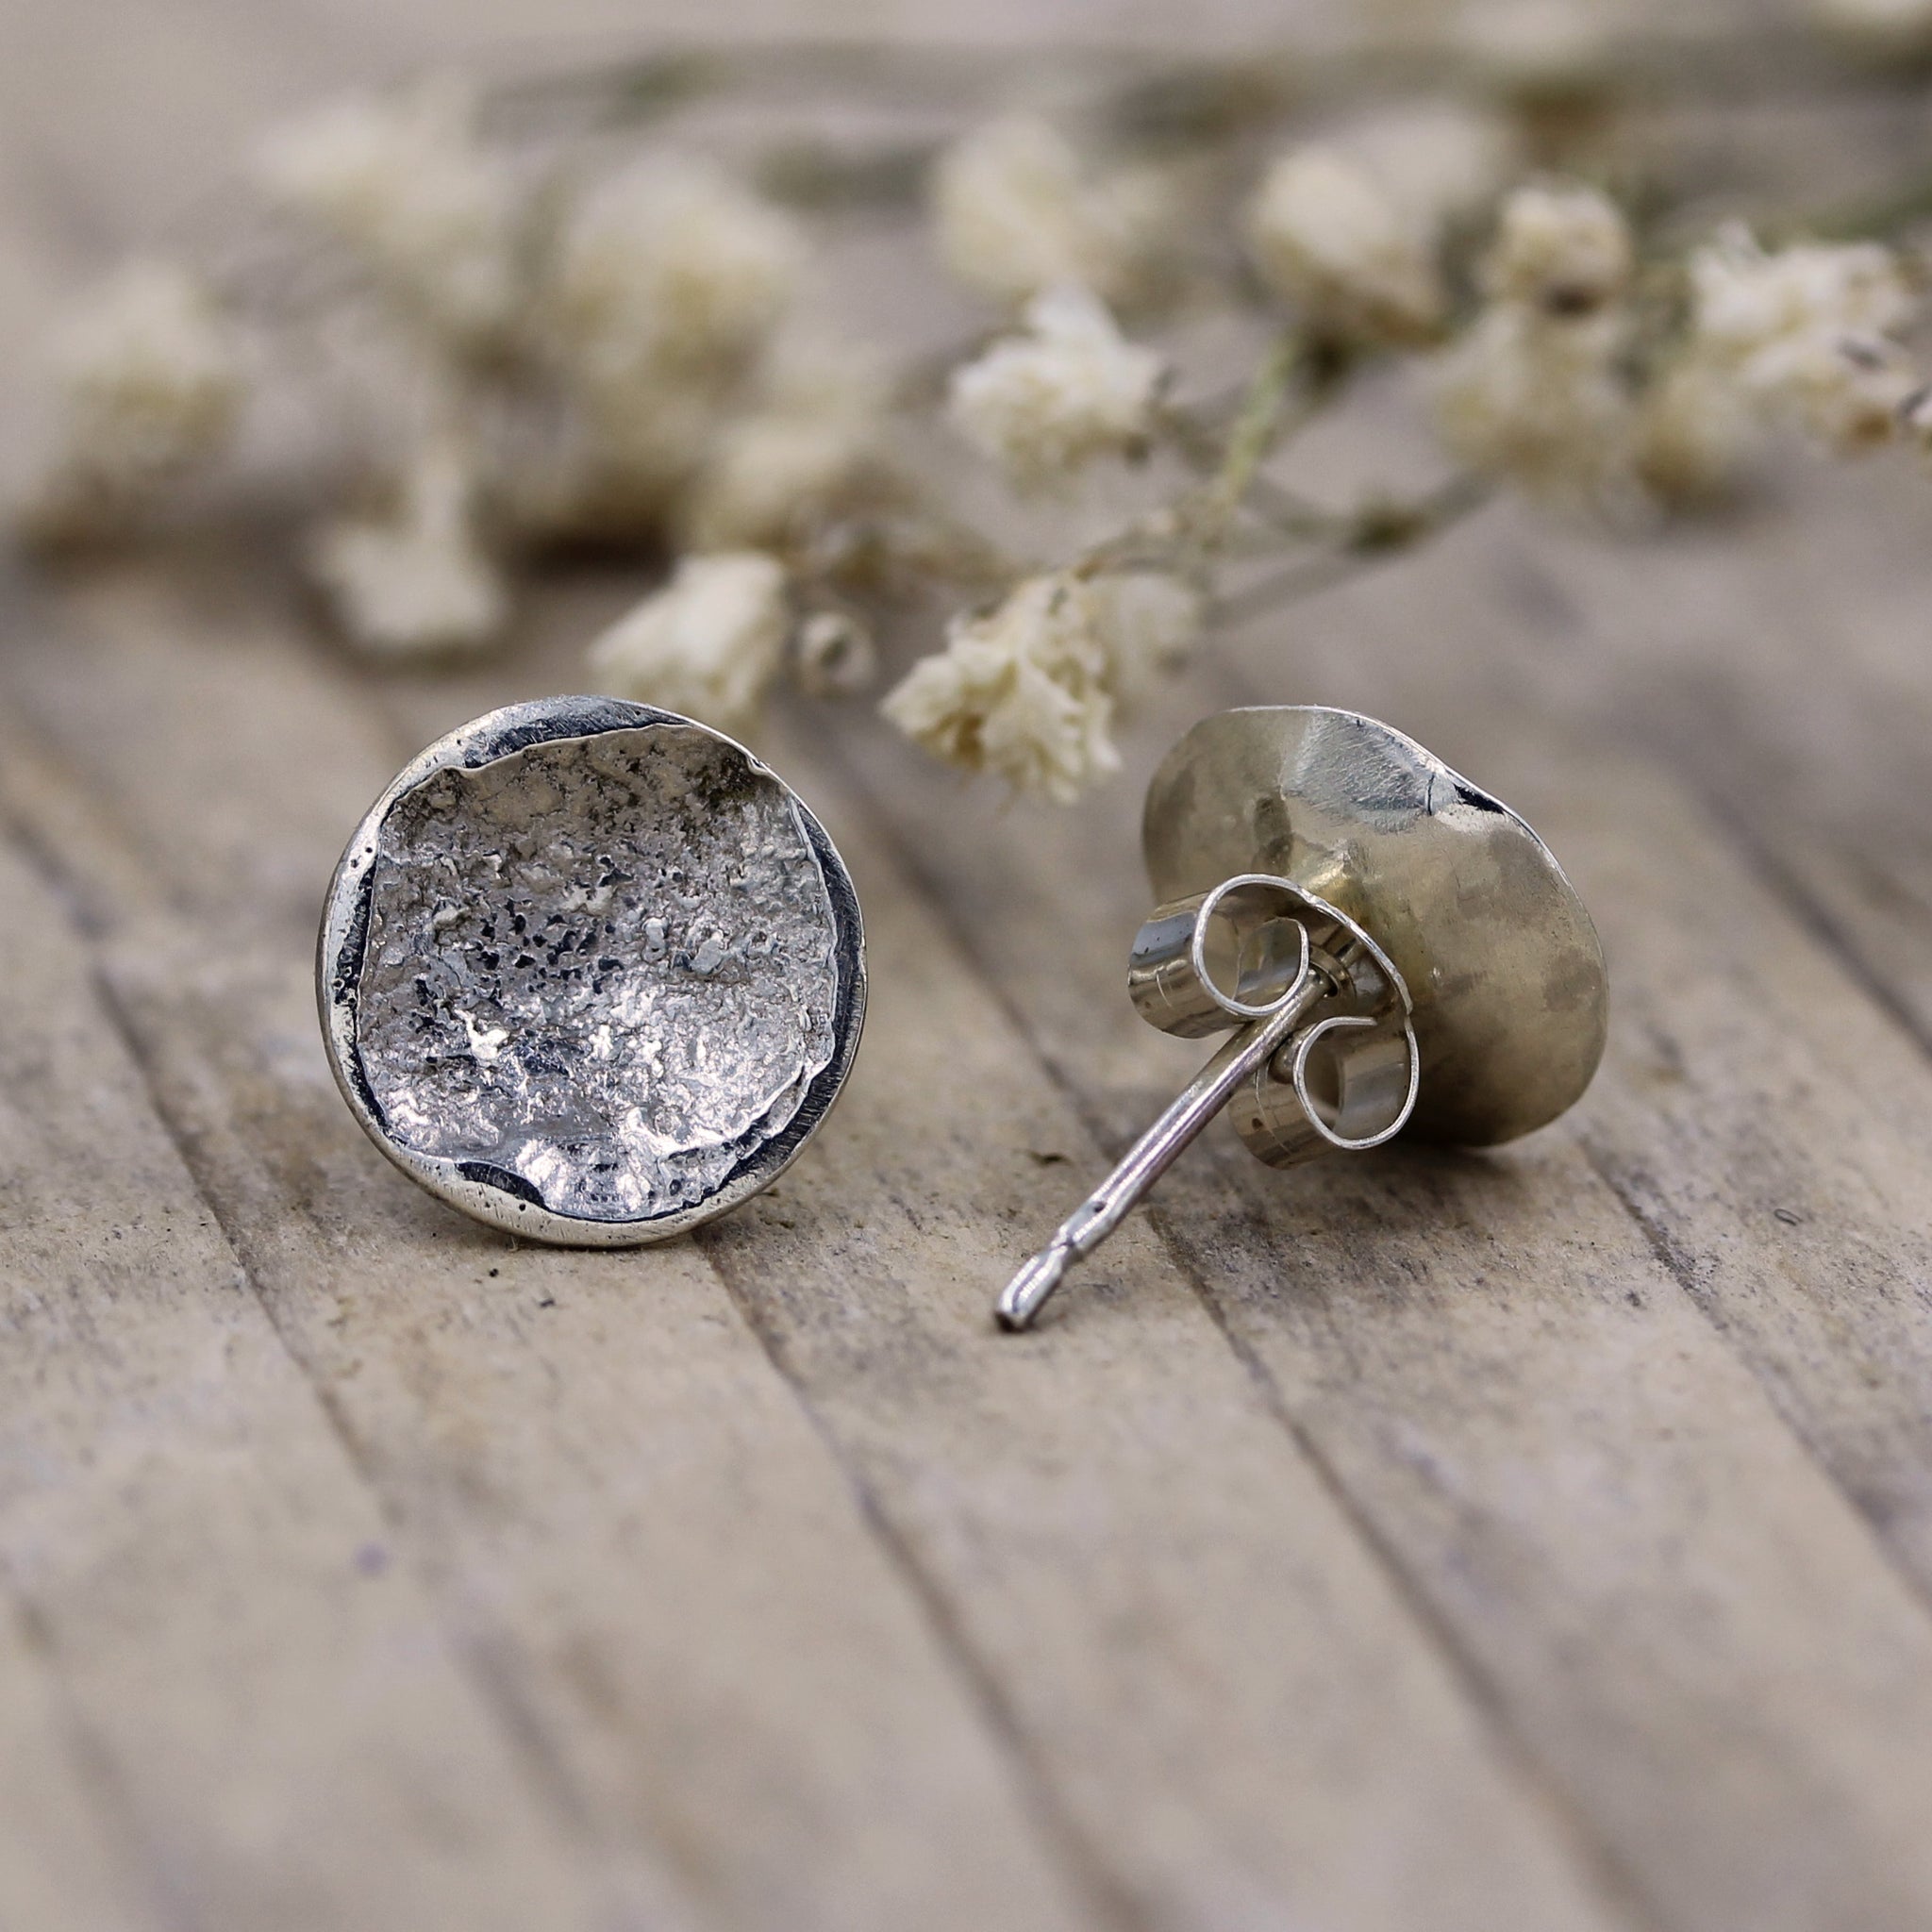 Stormy seas stud earrings by Gemma Tremayne Jewellery, handmade silver stud earrings